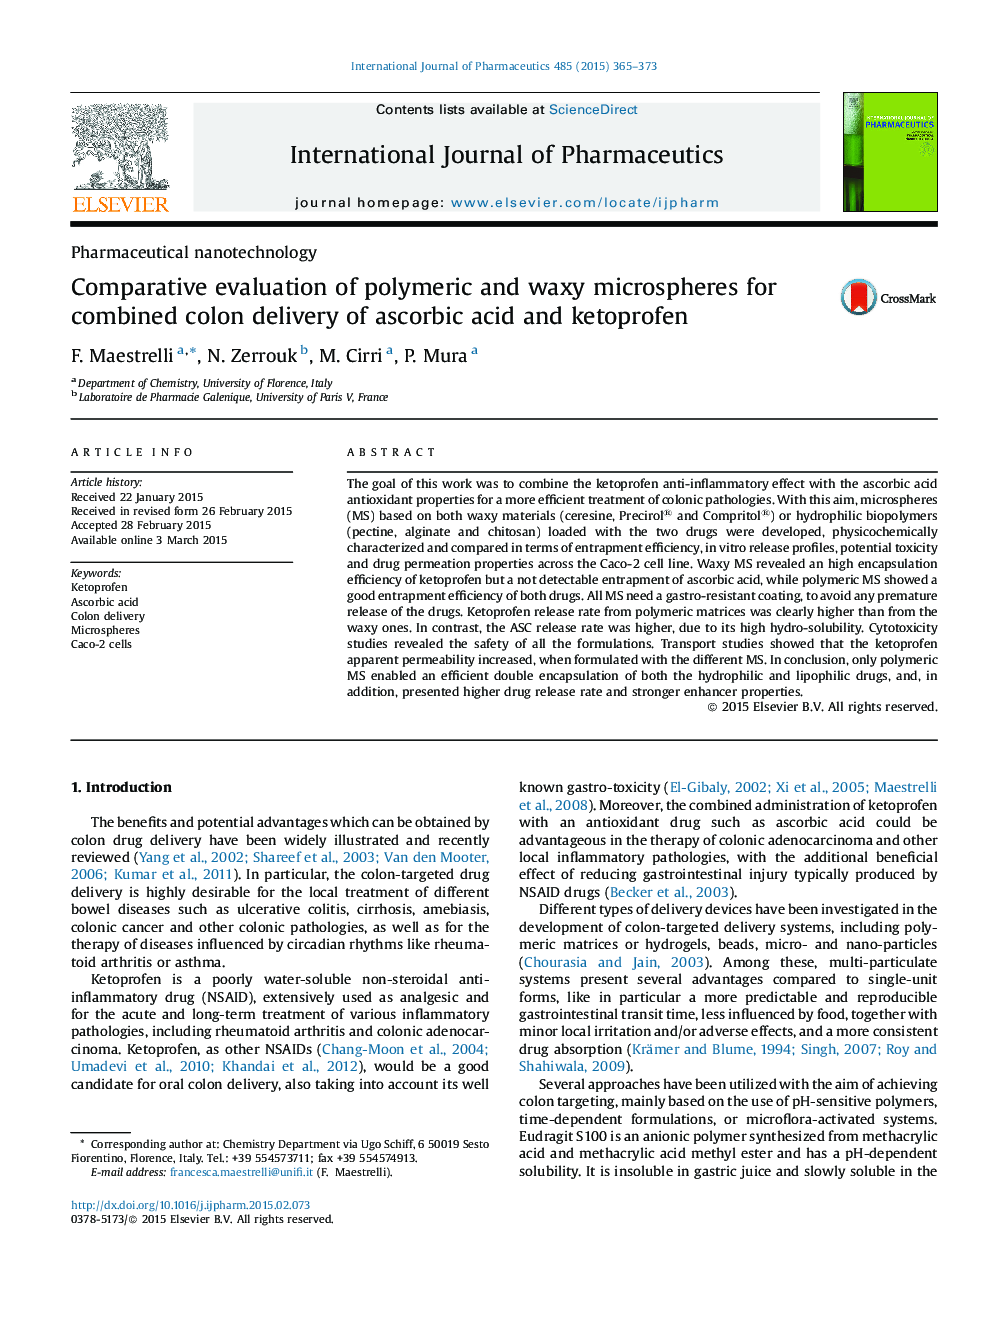 ارزیابی مقایسهای میکروسکپ های پلیمری و موم برای تحویل کولون همراه اسید آسکوربیک و کتروپفن 